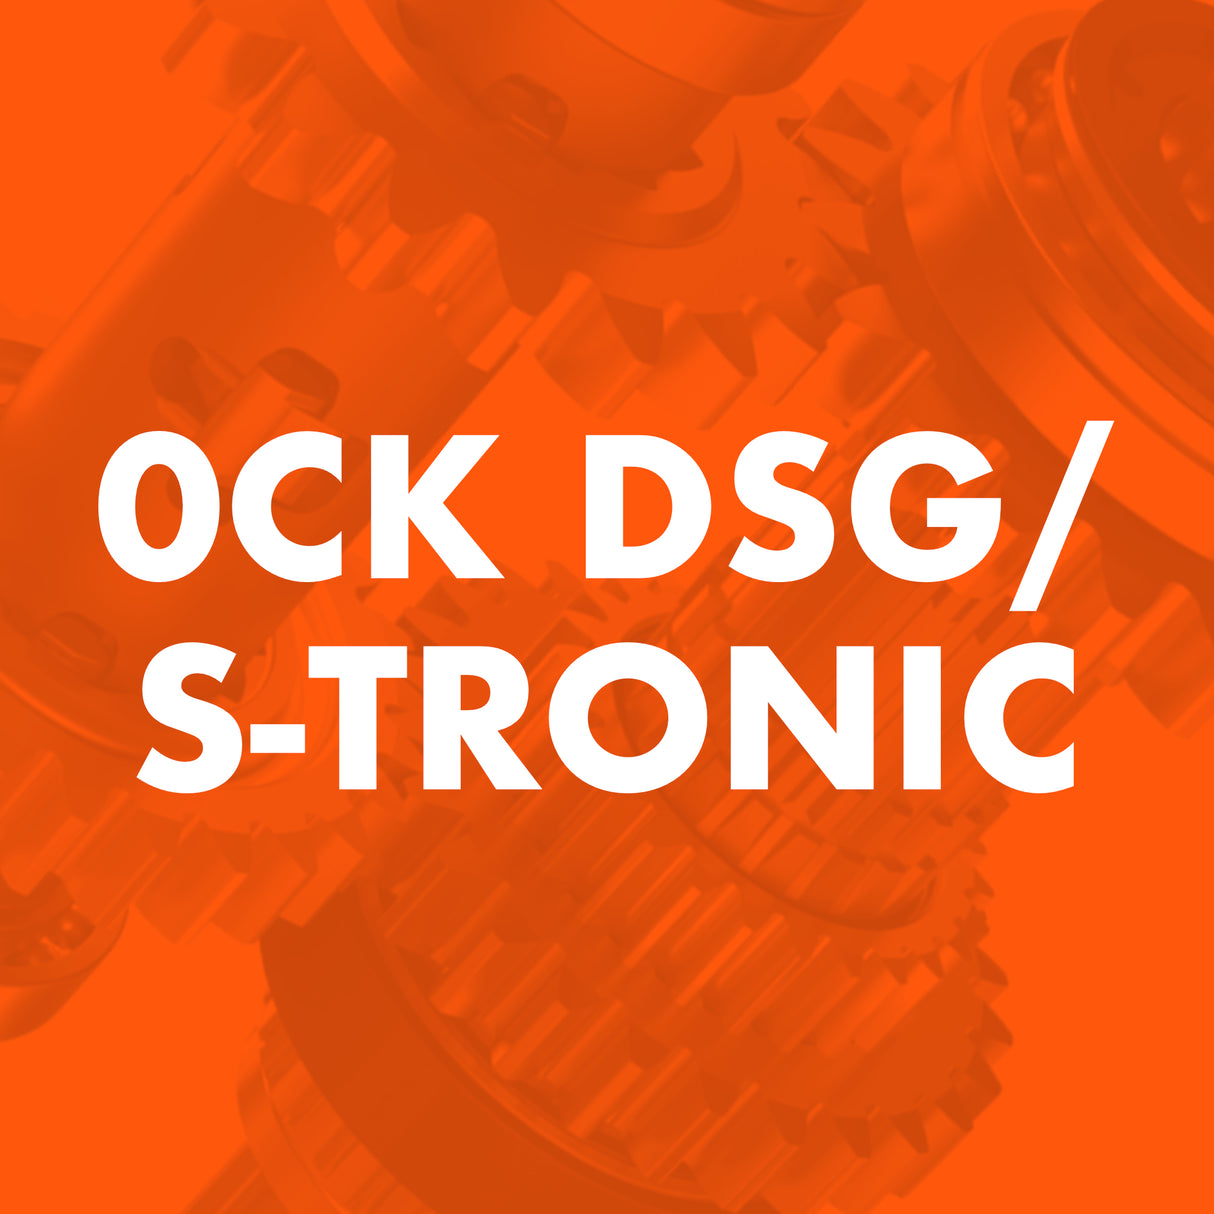 0CK DSG/S-Tronic Catalogue